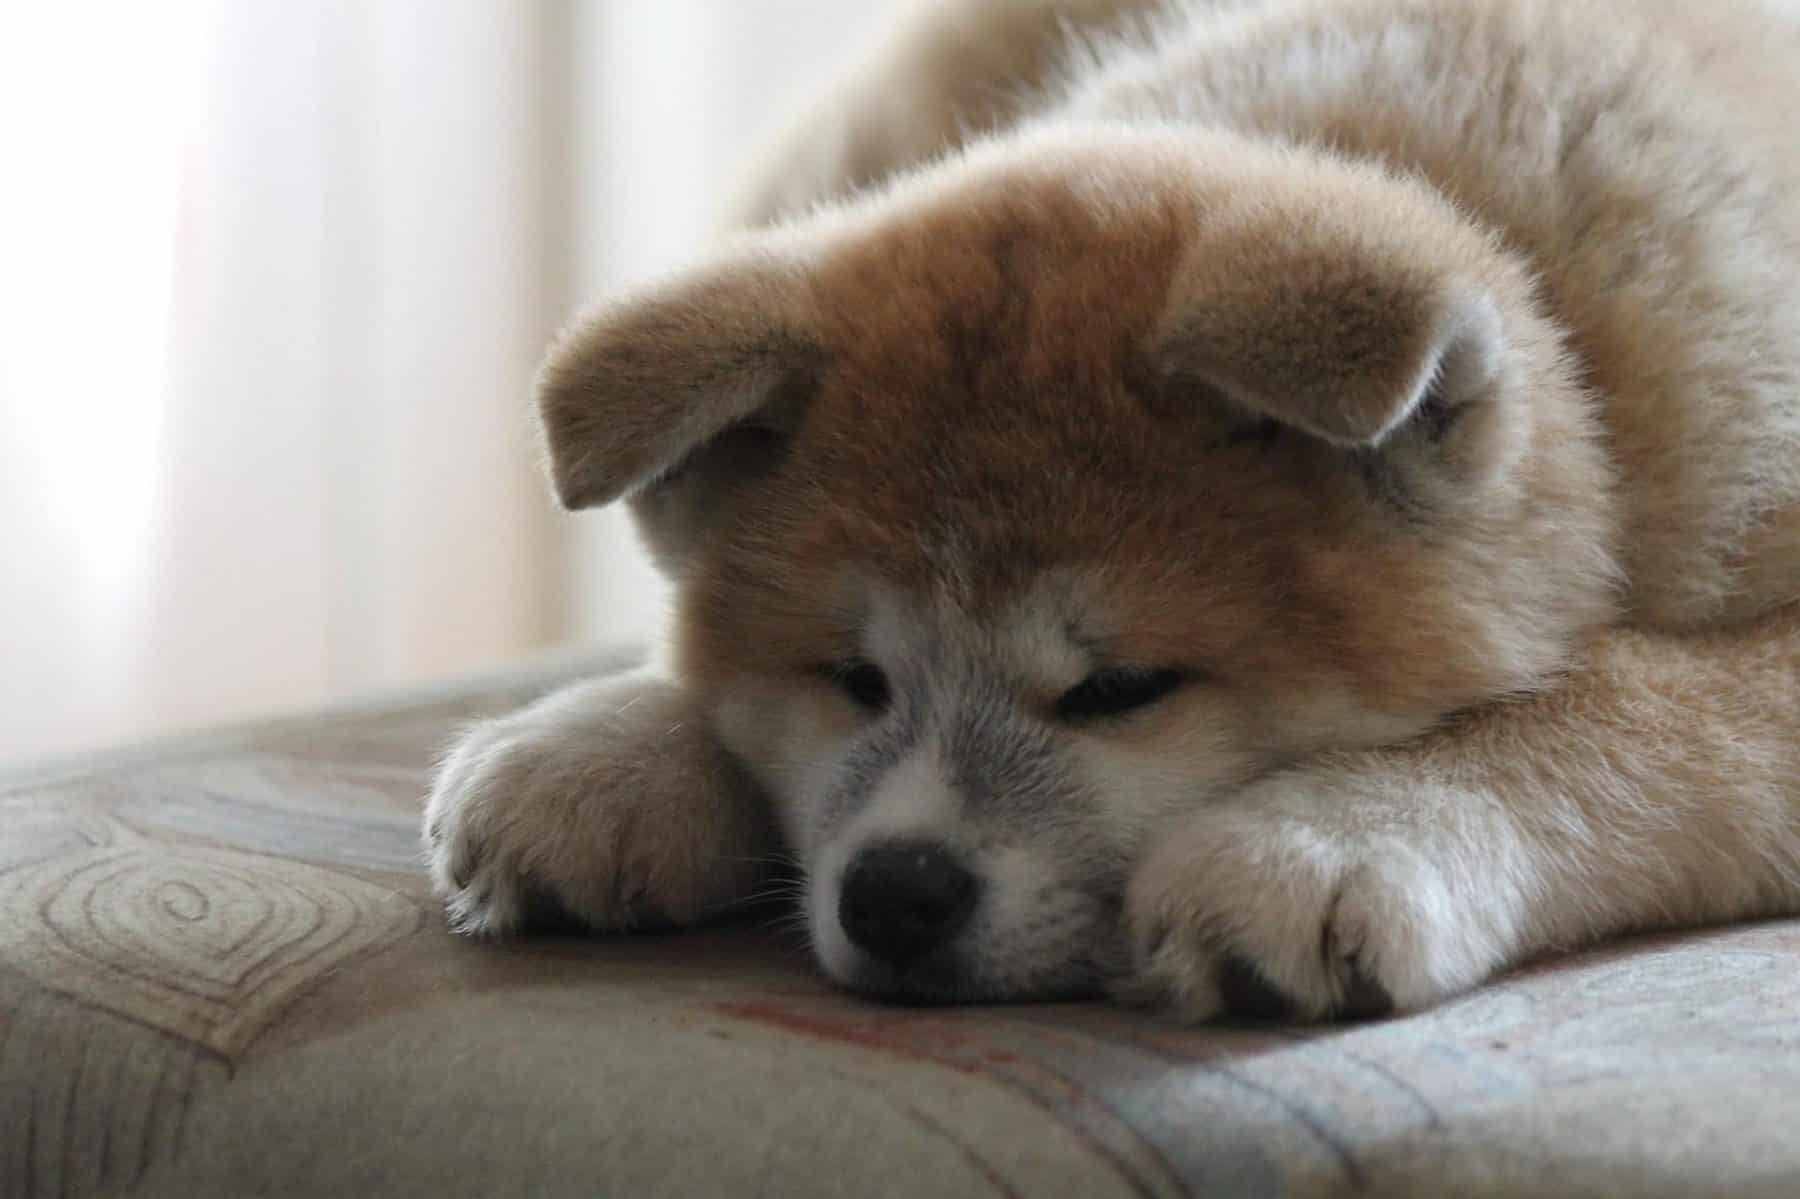 Kriger Underholde vidnesbyrd 11 japanska hundraser du måste träffa | The Dog People by Rover.com